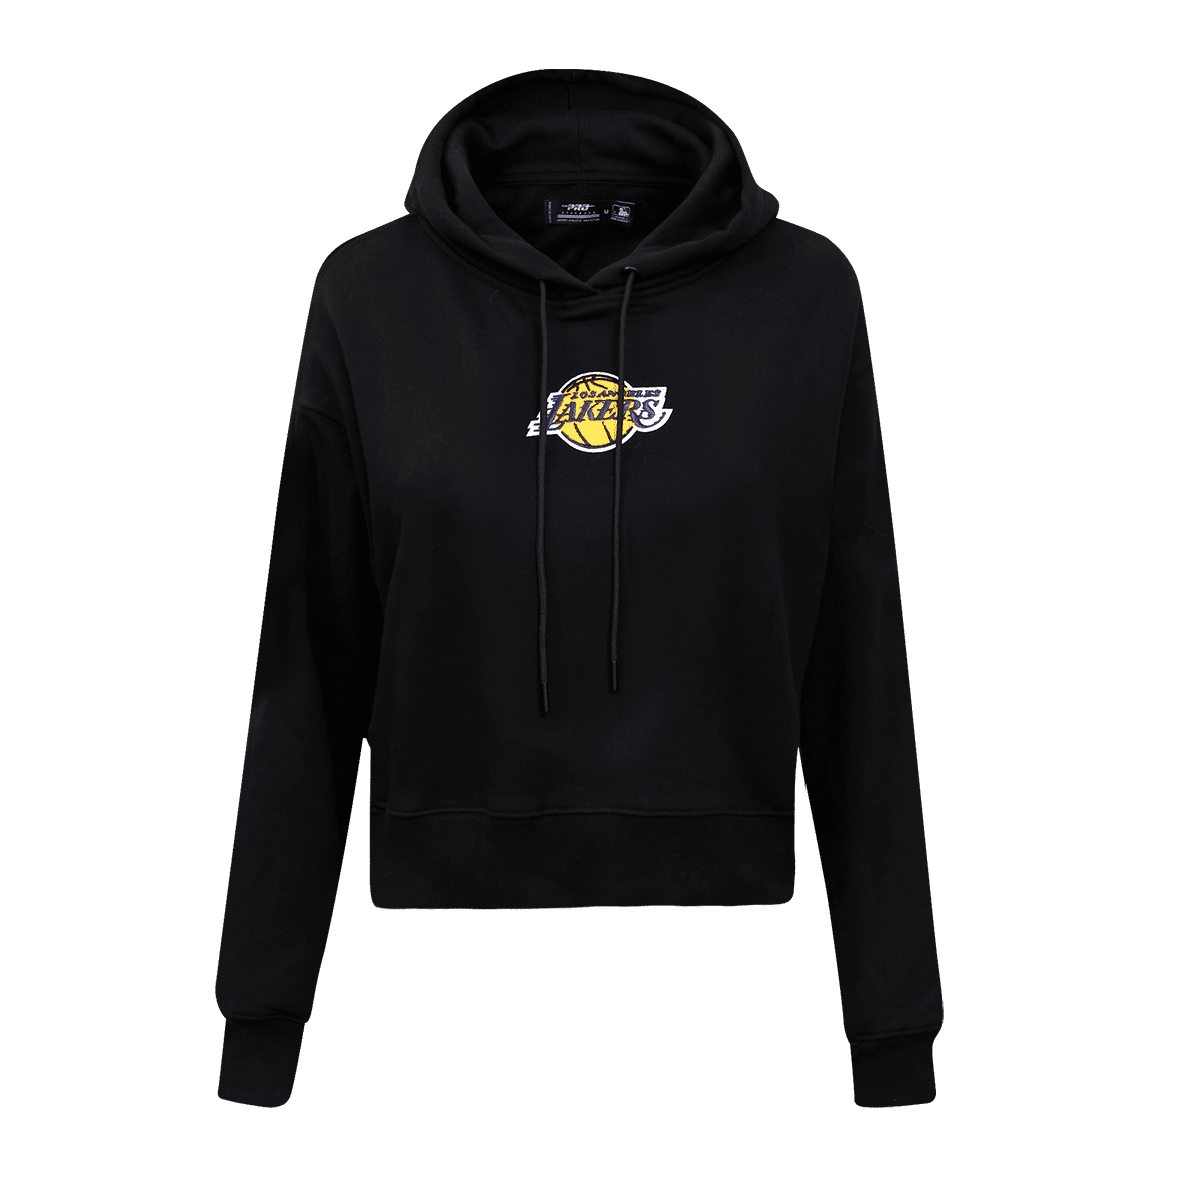 lakers hoodie new era